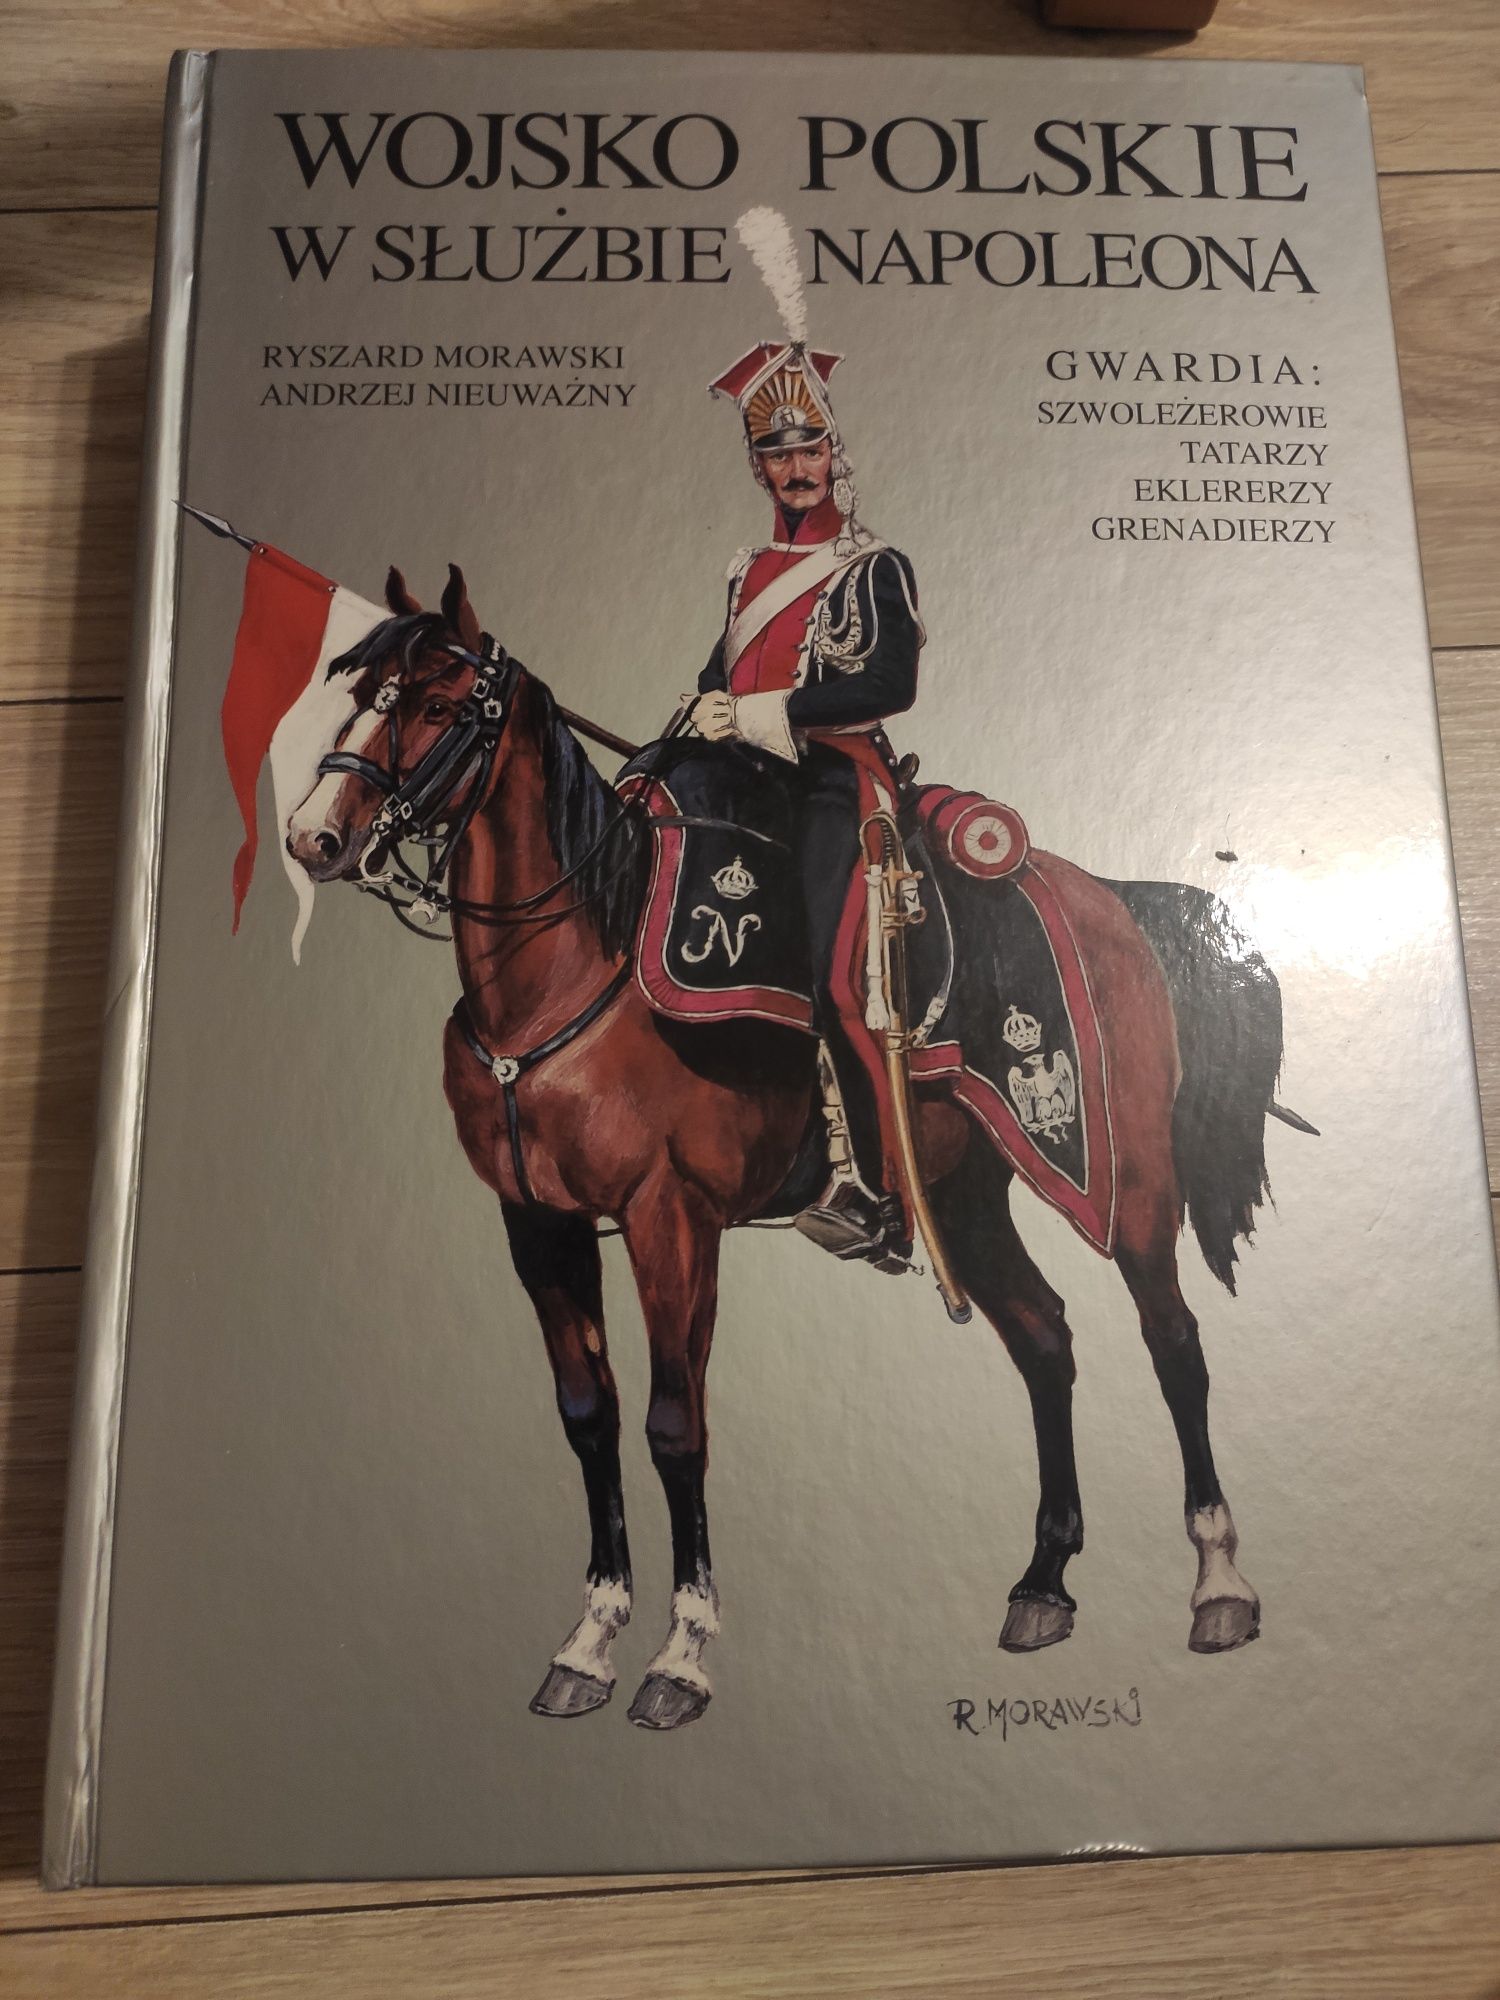 Wojsko polskie w służbie Napoleona Gwardia Morawski, Nieuważny